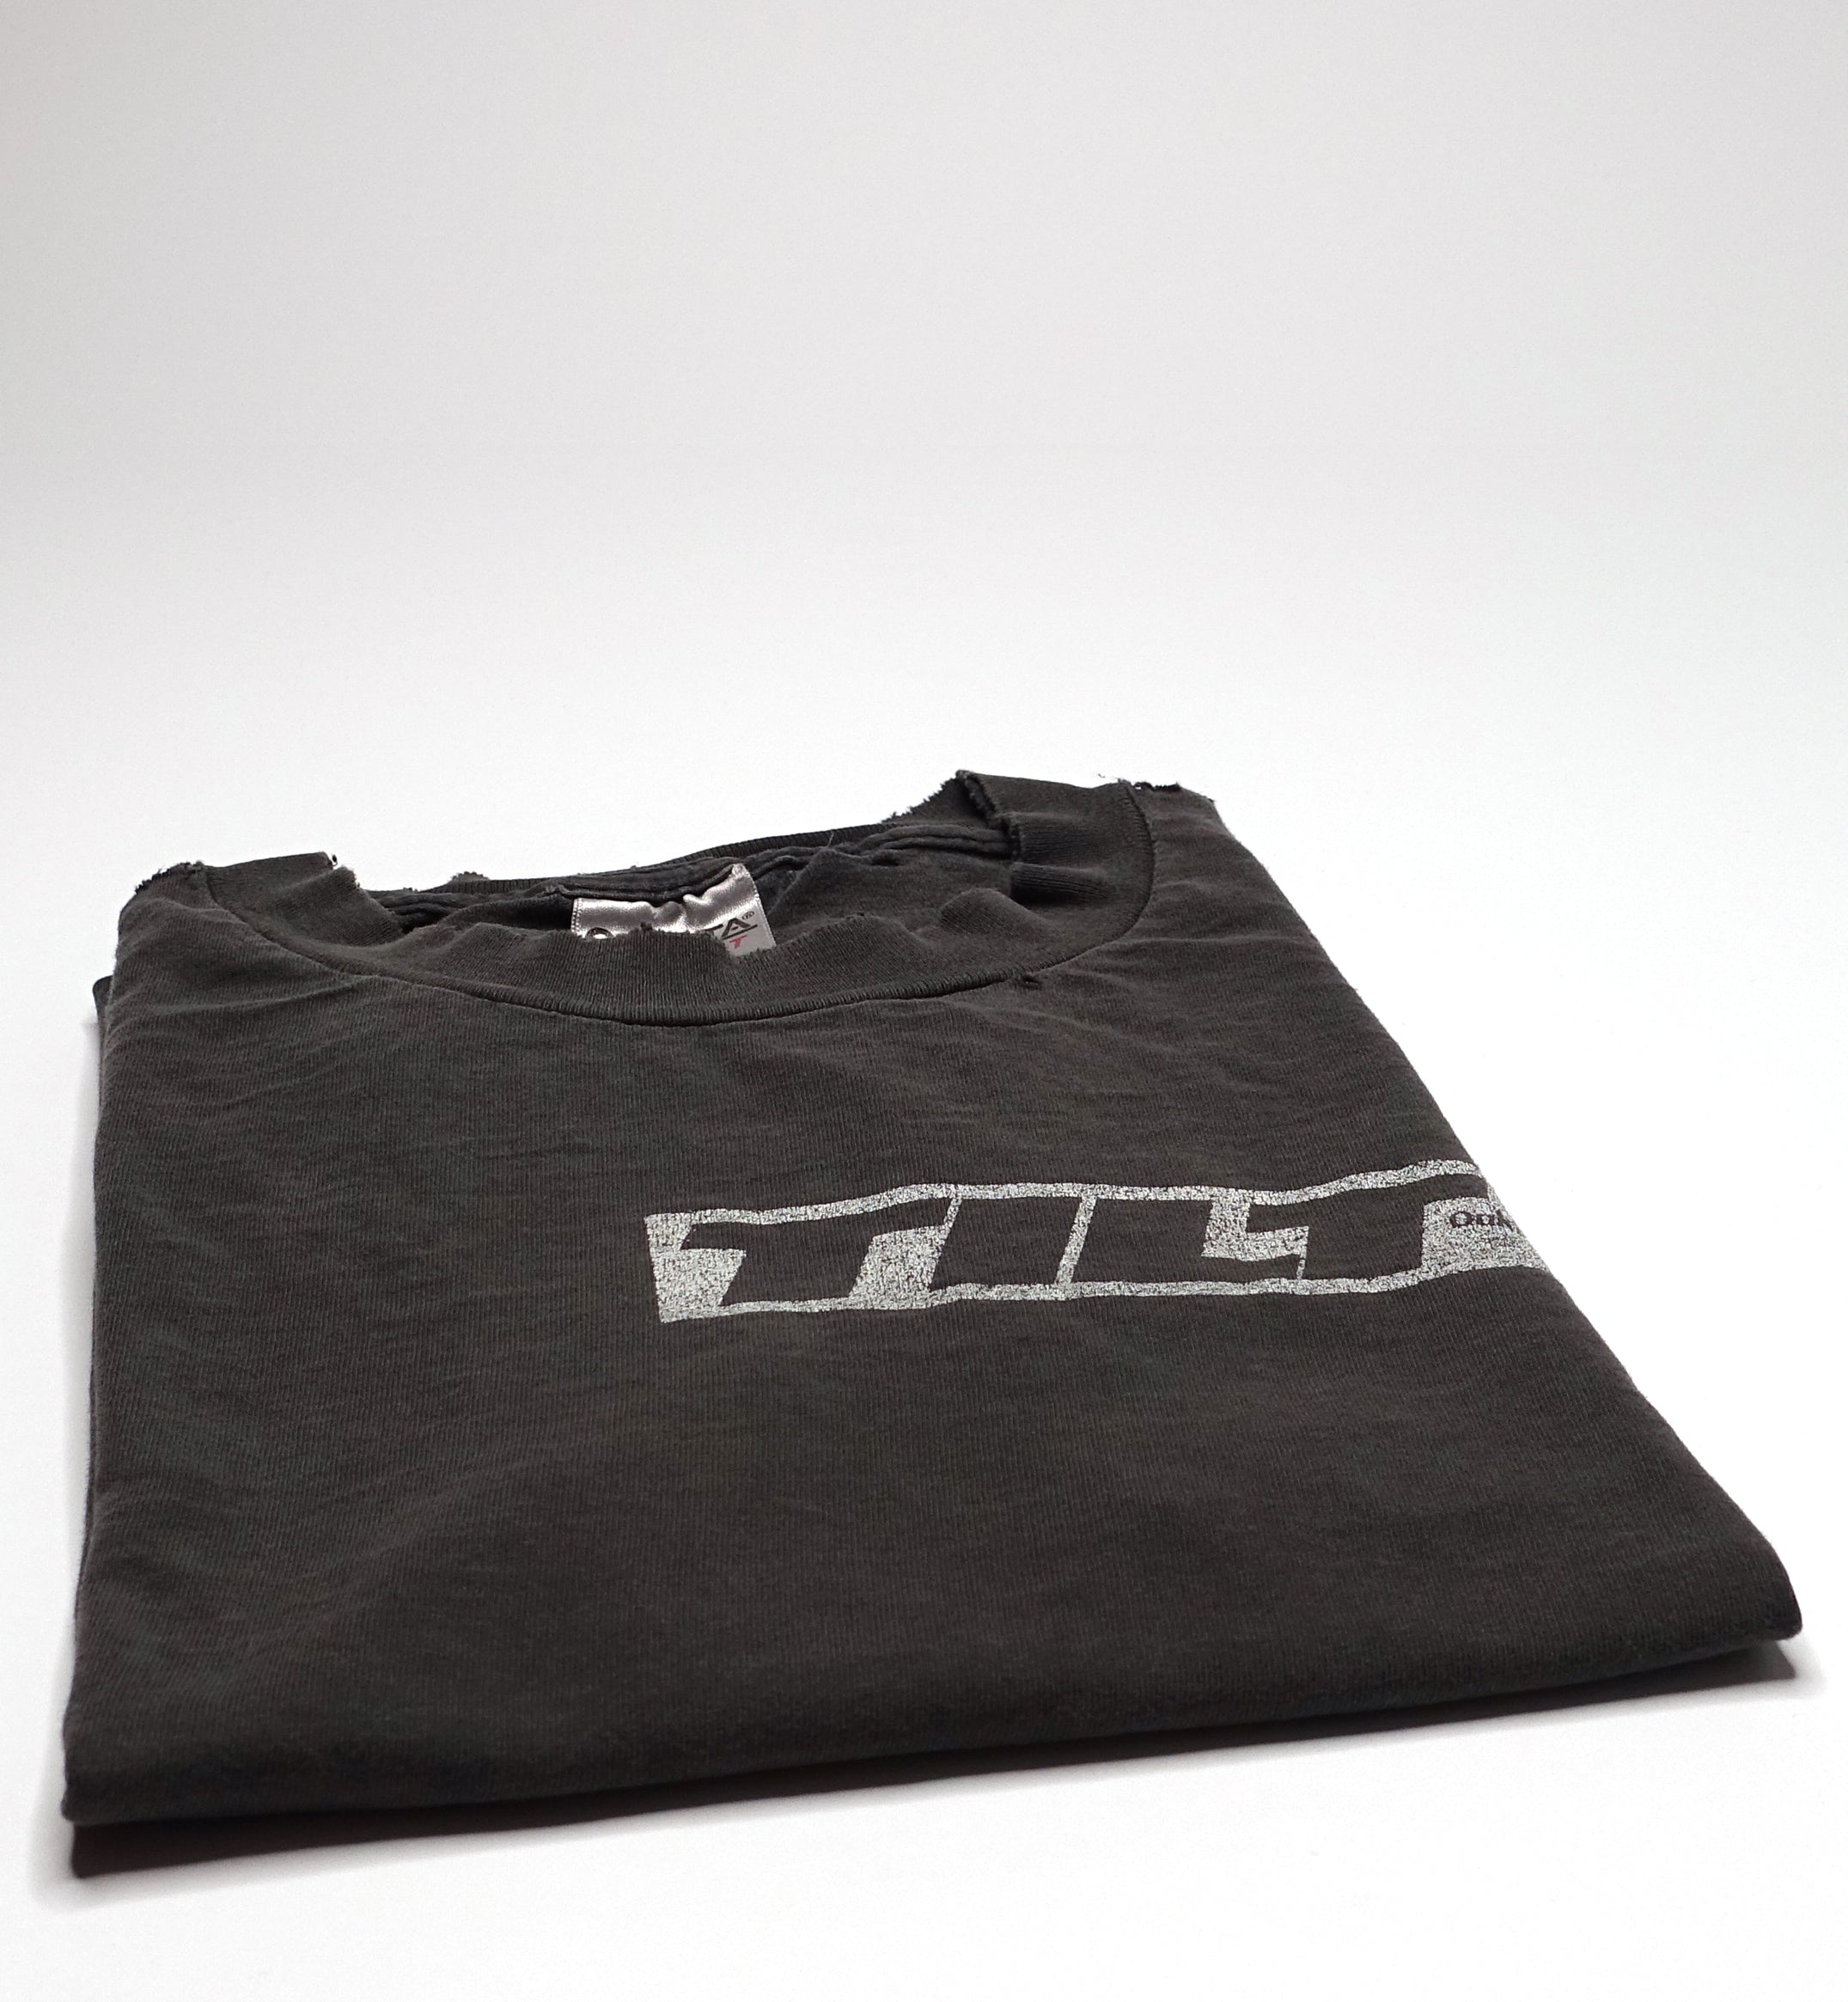 Tilt - Caution Tilt Pocket Print 90's Tour Shirt Size XL